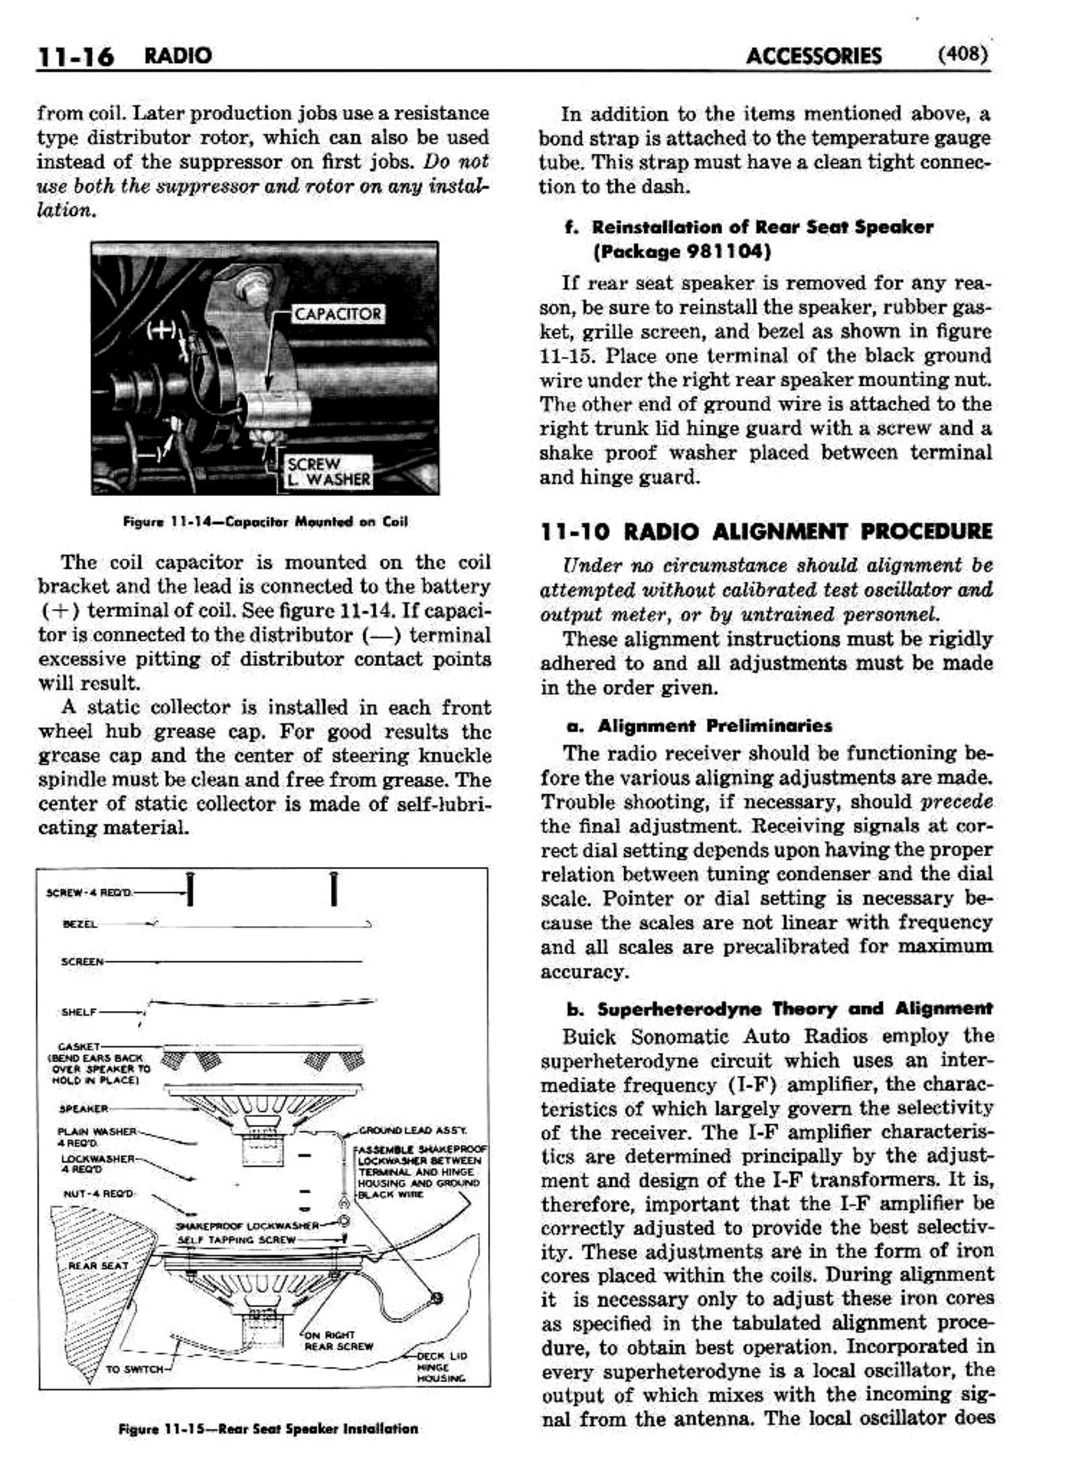 n_12 1951 Buick Shop Manual - Accessories-016-016.jpg